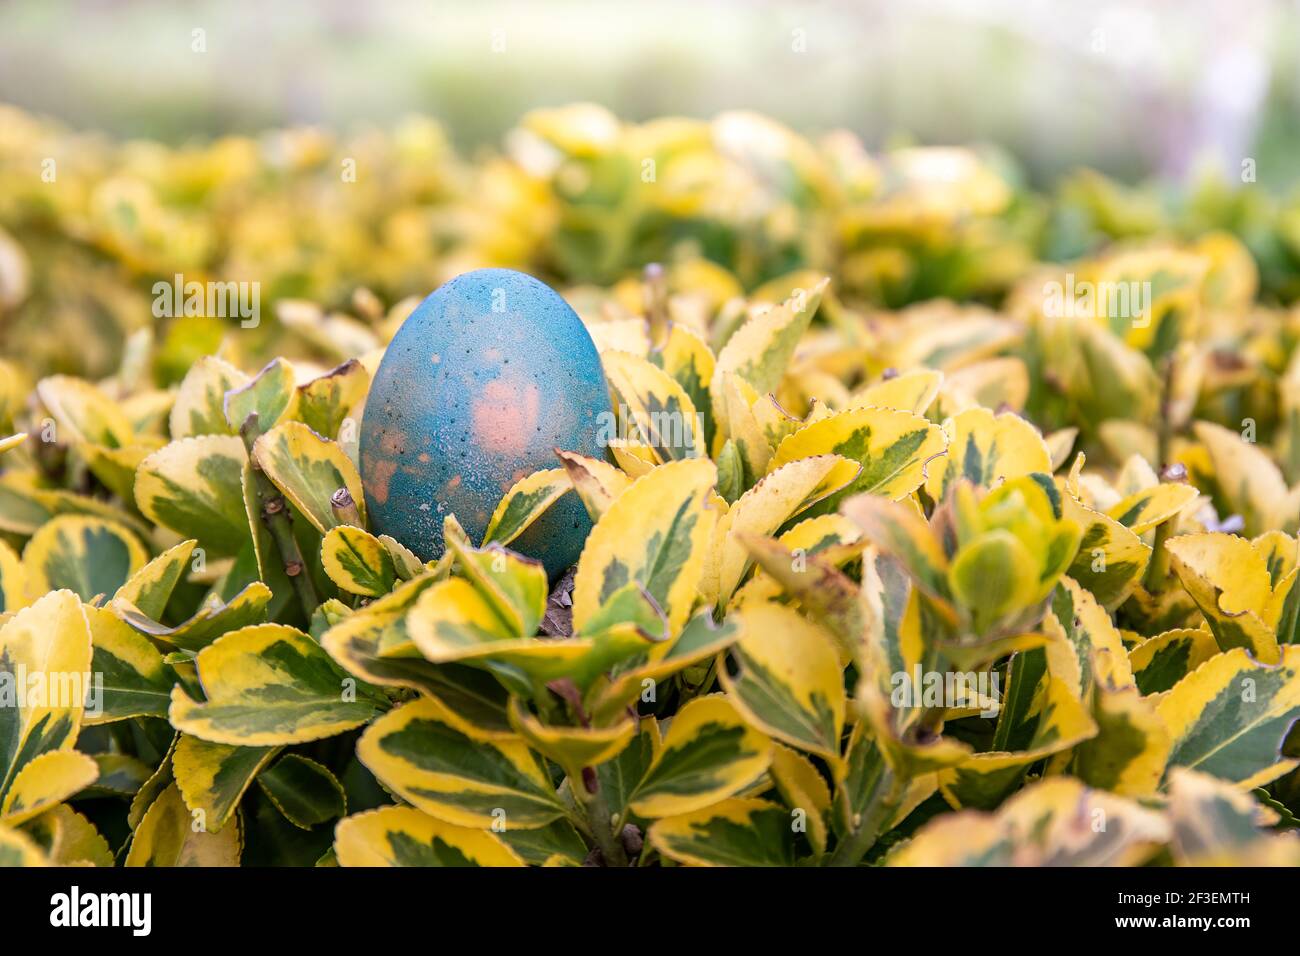 Bereit für eine Ostereiersuche? Ein hellblaues Ei liegt auf einem grünen und gelben Busch und wartet darauf, dass ein Kind es findet. Stockfoto